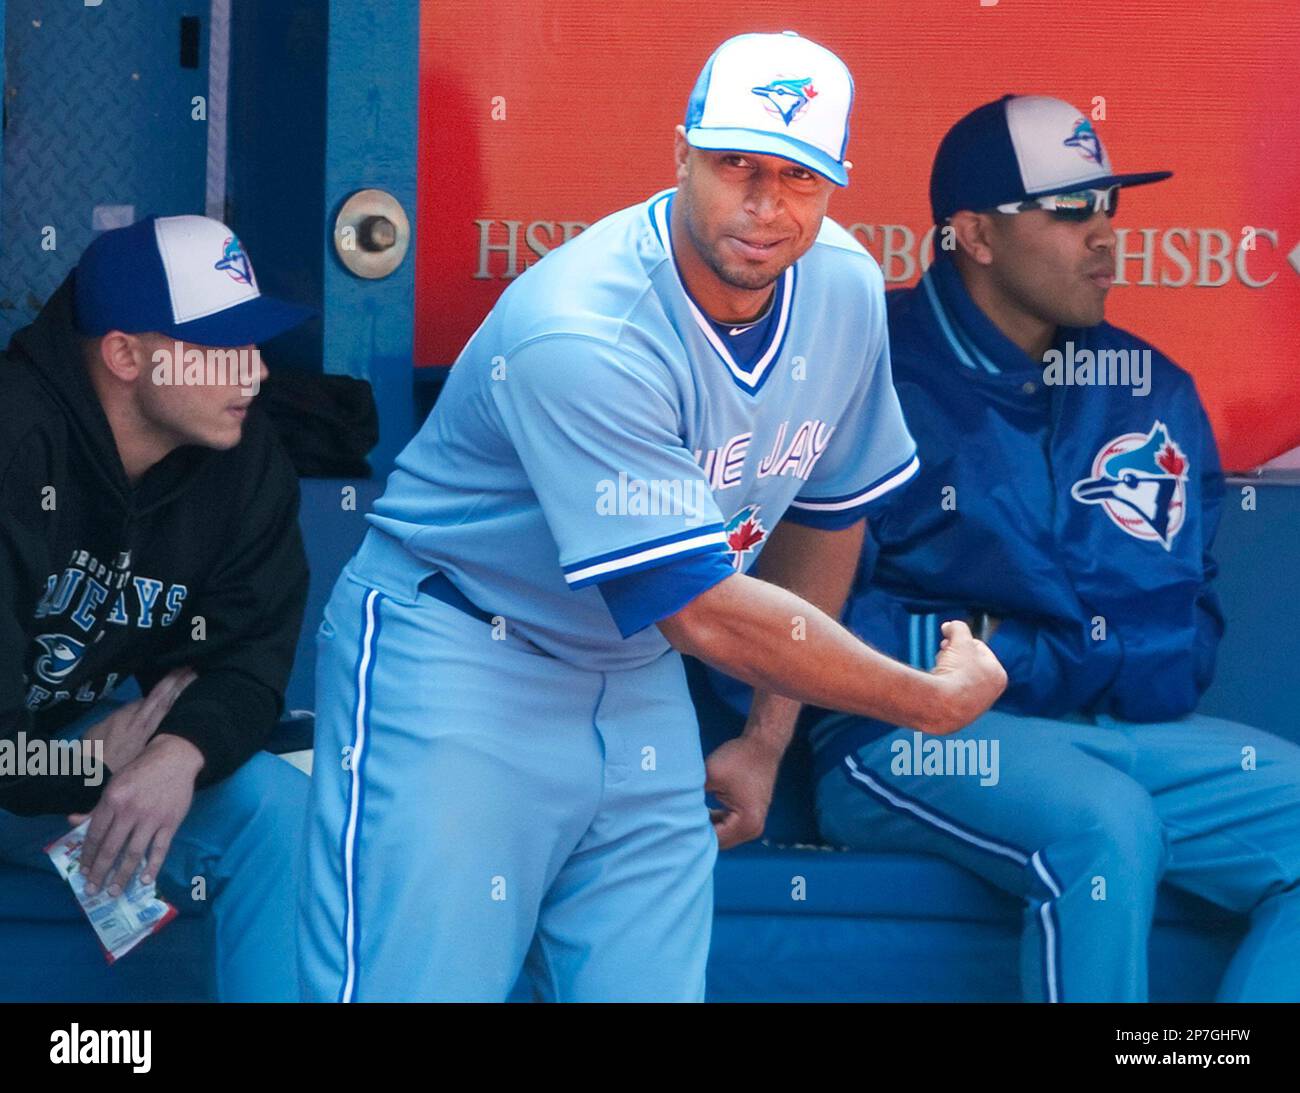 Toronto Blue Jays center fielder Vernon Wells, center, flexes a